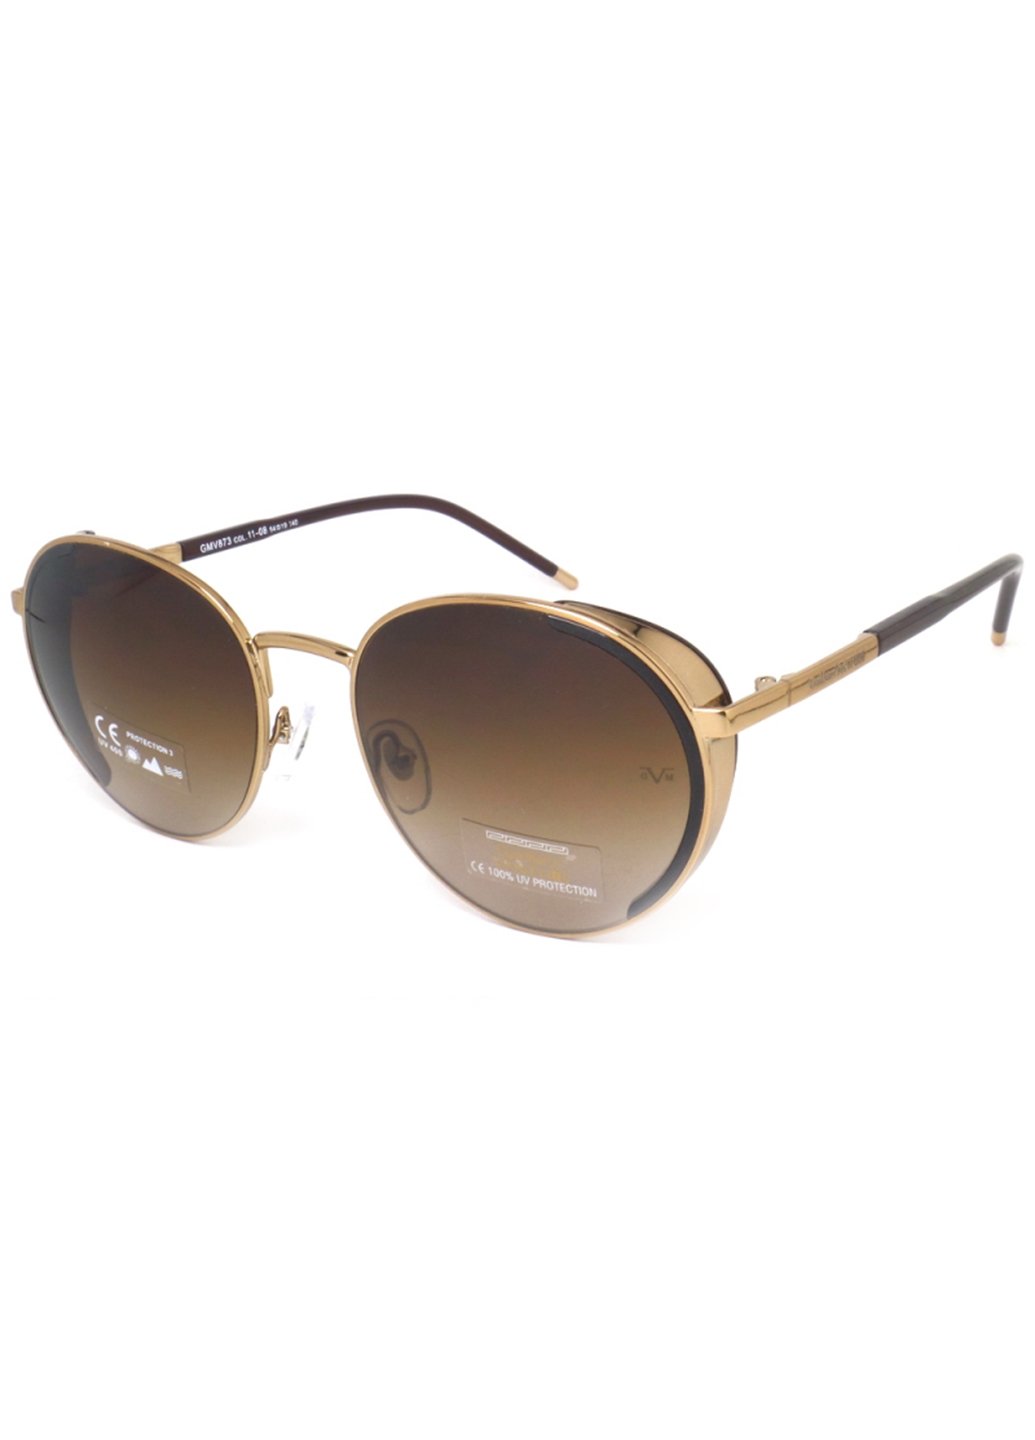 Купить Женские солнцезащитные очки Gian Marco VENTURI GMV873 130018 - Коричневый в интернет-магазине